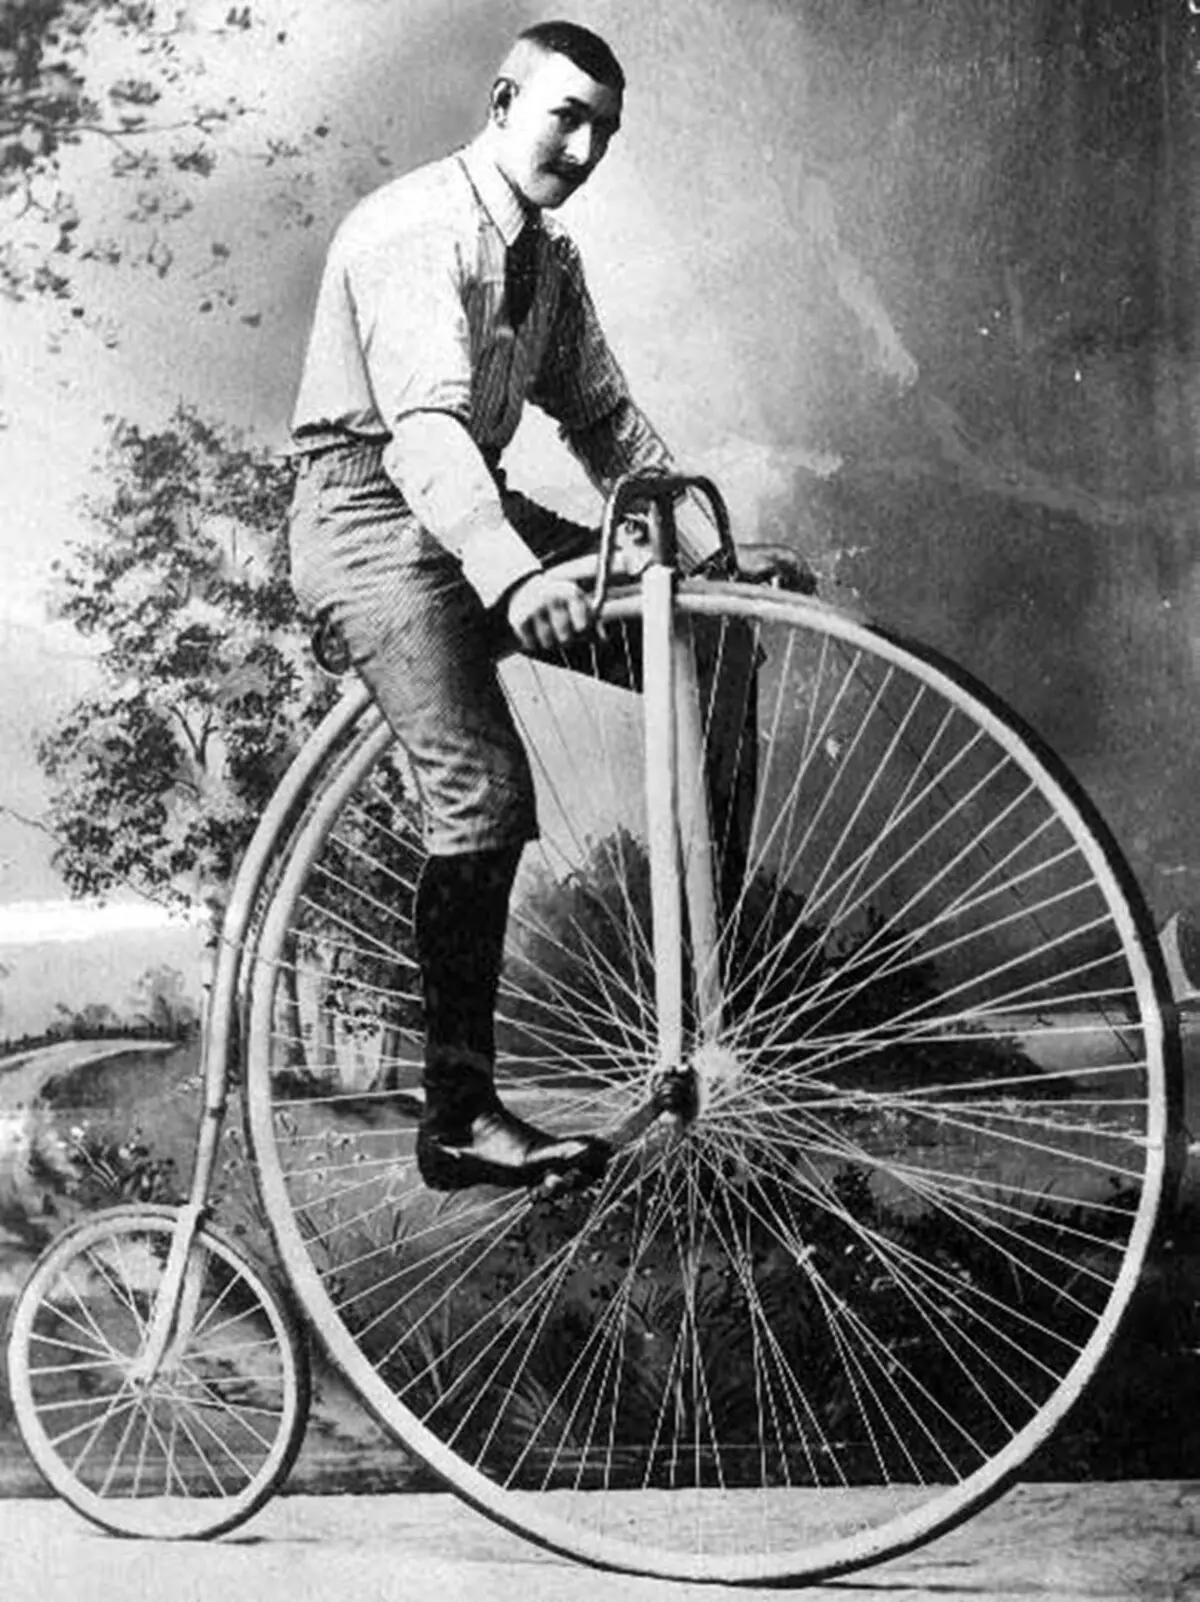 Monocycle: यूनिसाइकिल (एकल बाइक) का नाम क्या है? विद्युत मॉडल का अवलोकन। सवारी करने के लिए कैसे सीखें? 26188_6